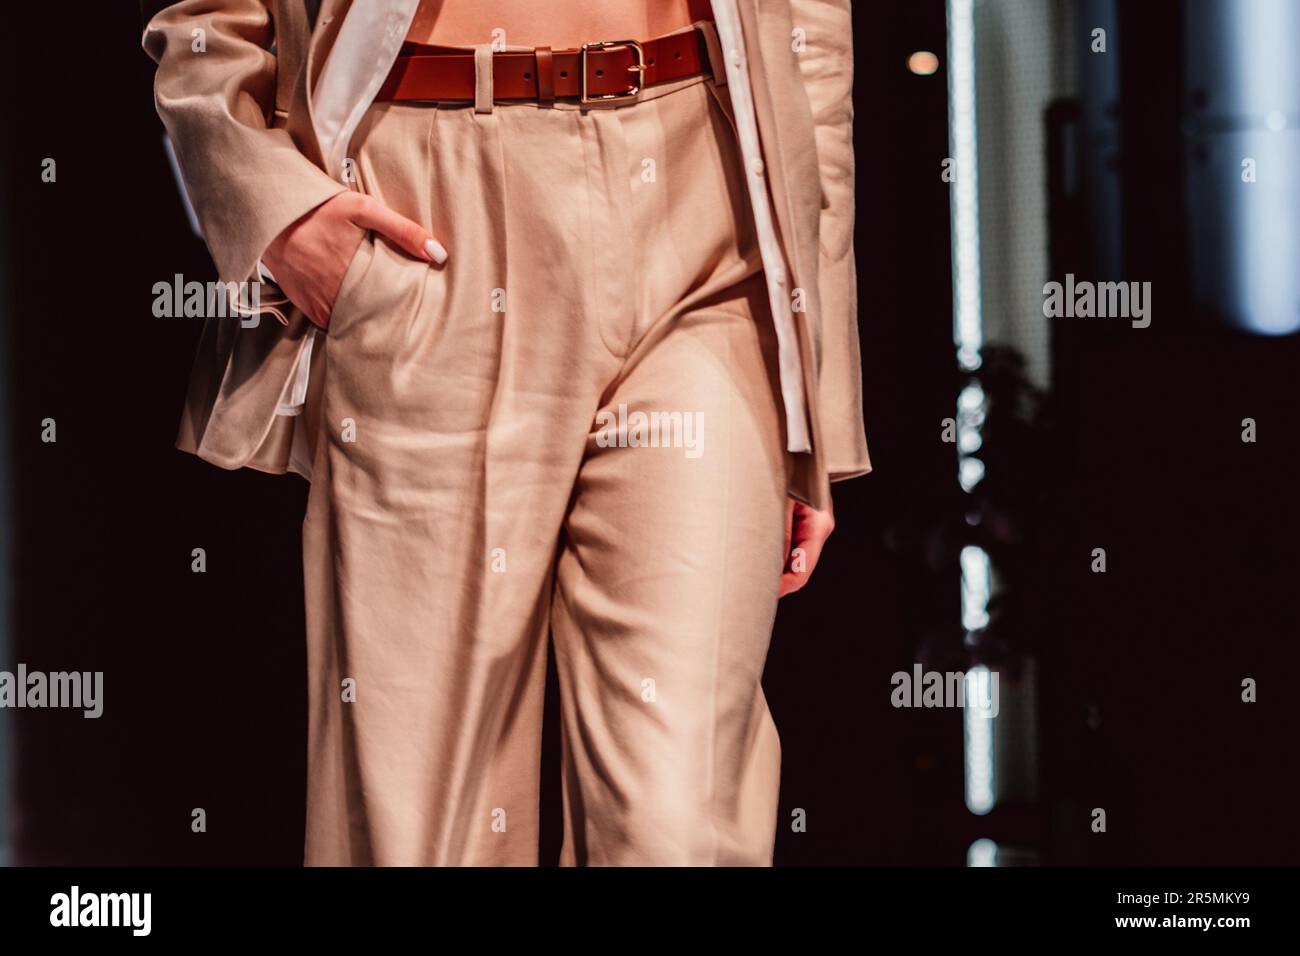 Schicke Details in stilvollem, neutralbeigem Outfit, stilvolle Jacke, Hose mit braunem Ledergürtel. Textilkonzept Unisex Stockfoto